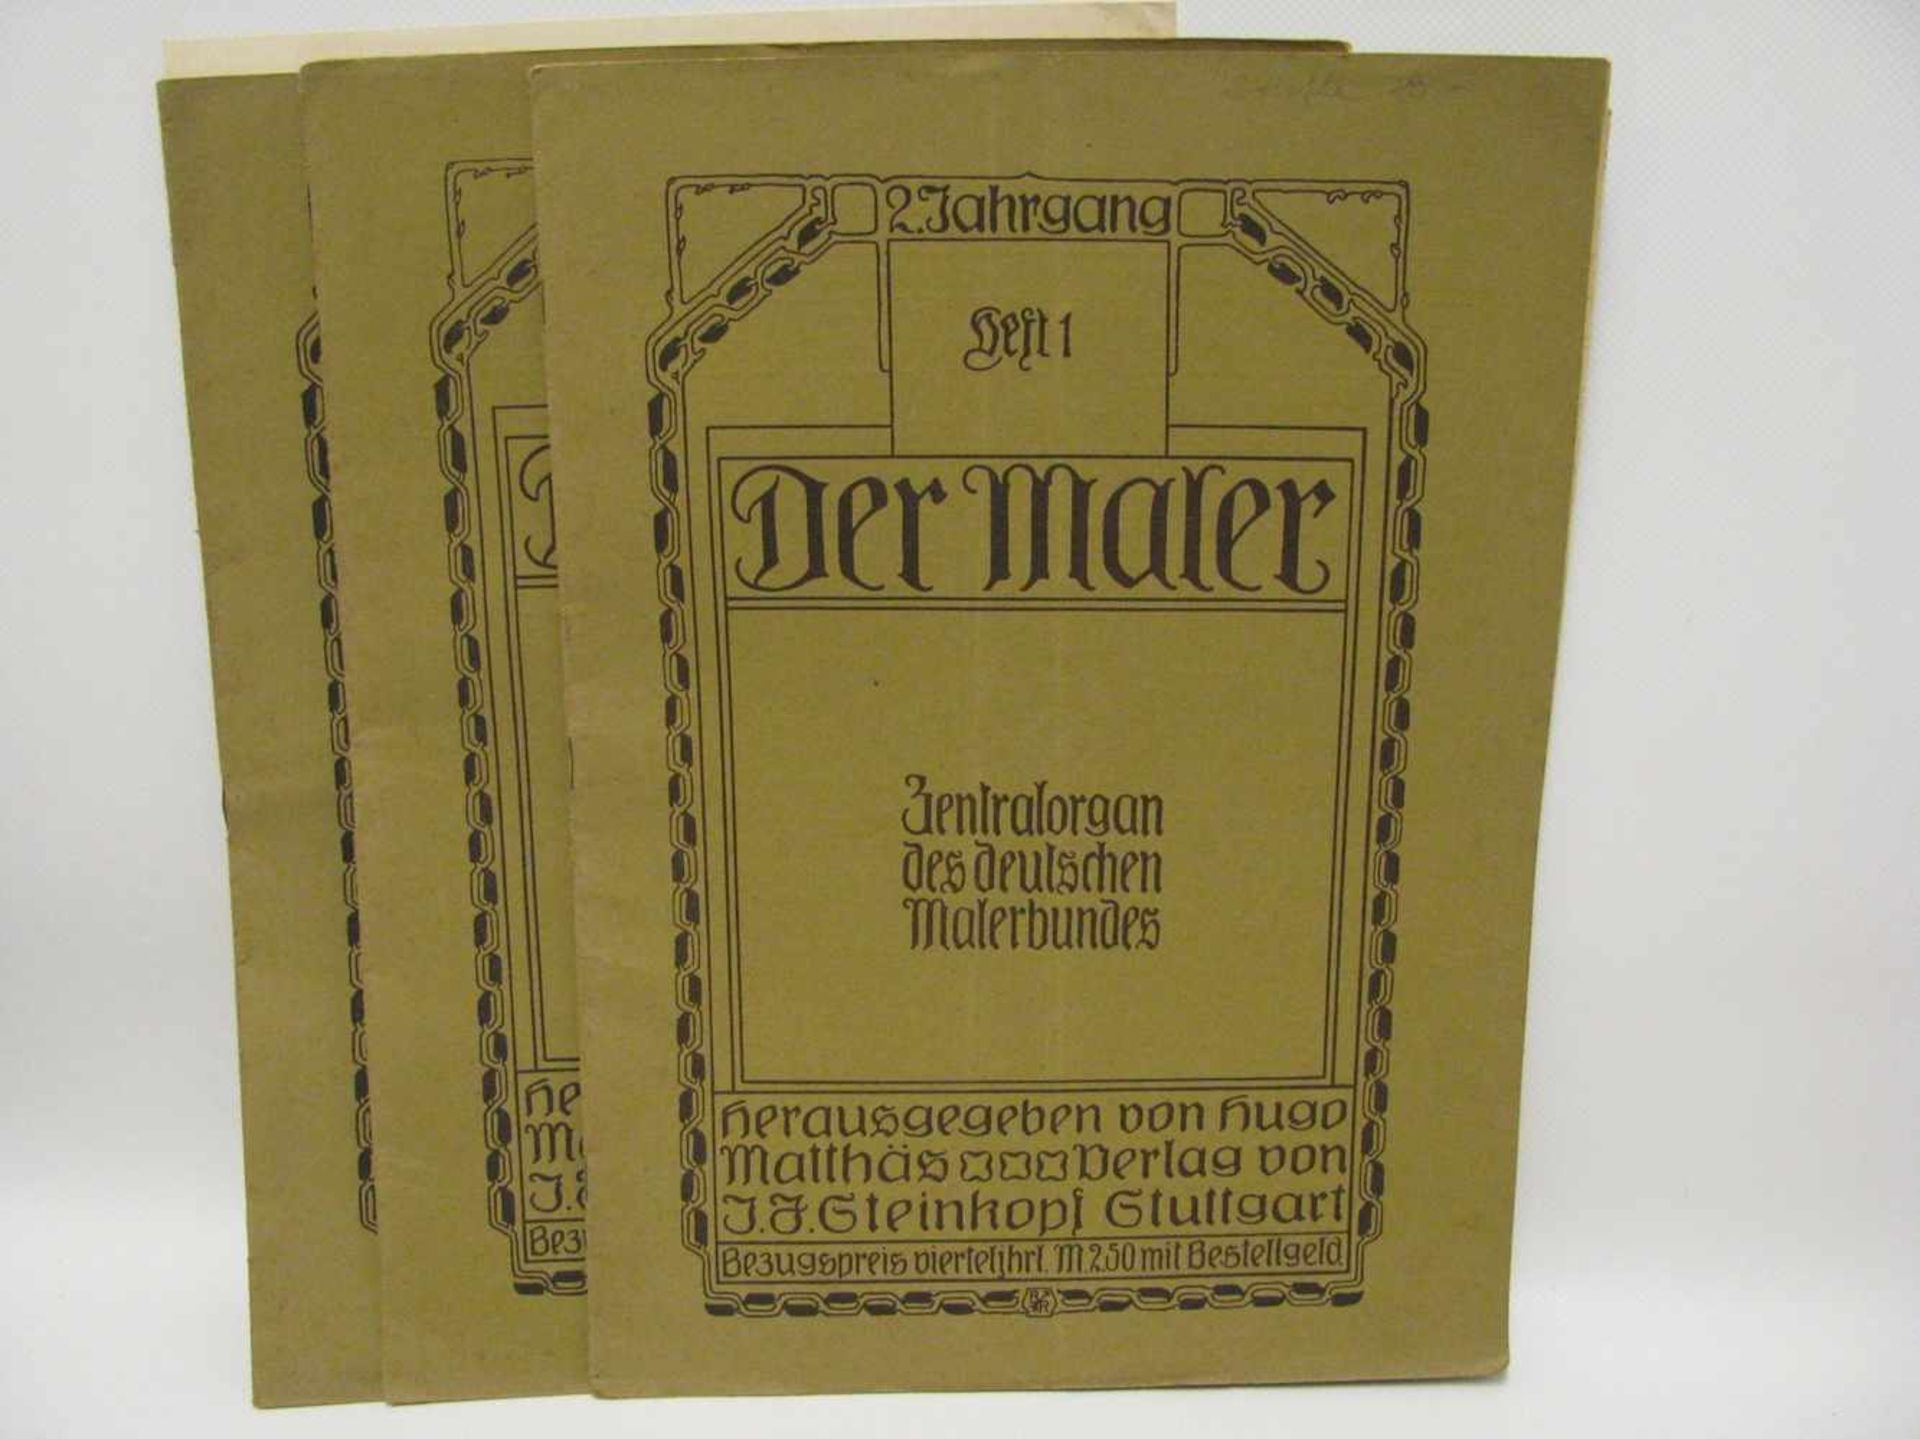 3 Hefte der Maler, Teil I., II. und IV., Jugendstil, 1907, mit Jugendstil-Ornamentvorlagen.- - -19.